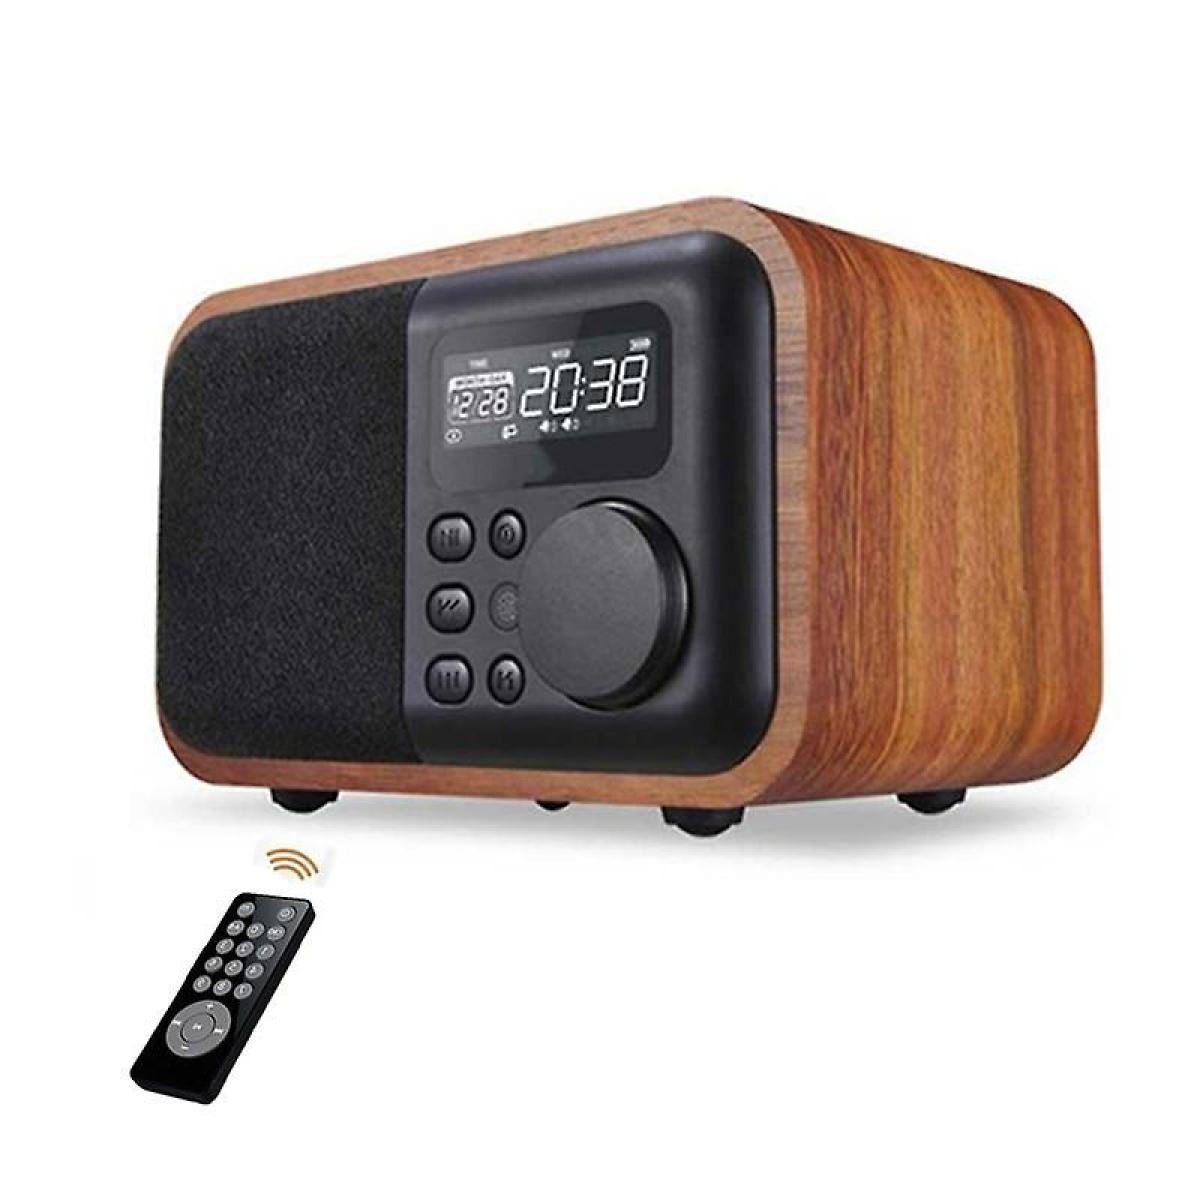 Hauts-parleurs Universal Subwoofer Bluetooth en bois sans fil Portable avec élogie radio FM Caixa de Som Télécommande Altavoces haut-parleur